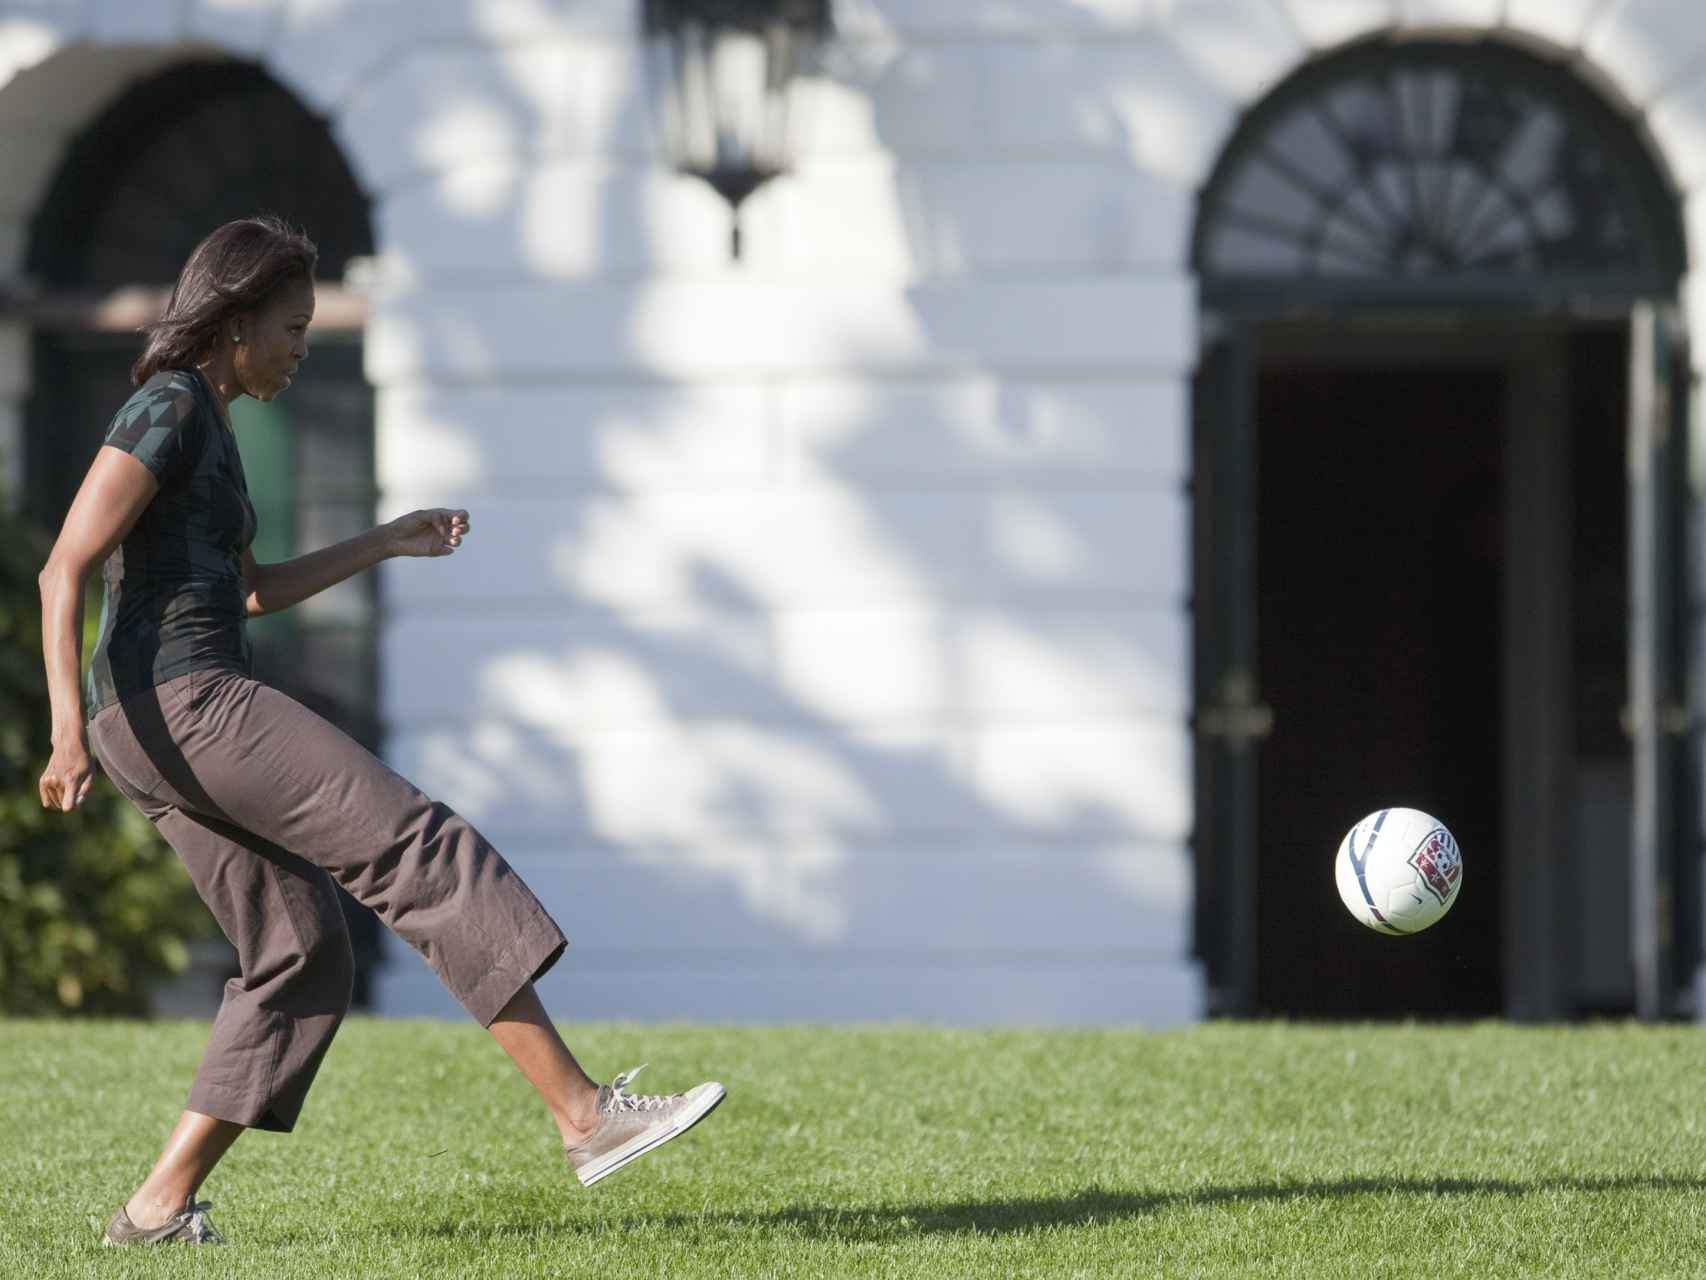 Michelle Obama juega a fútbol en una imagen típica de la primera dama